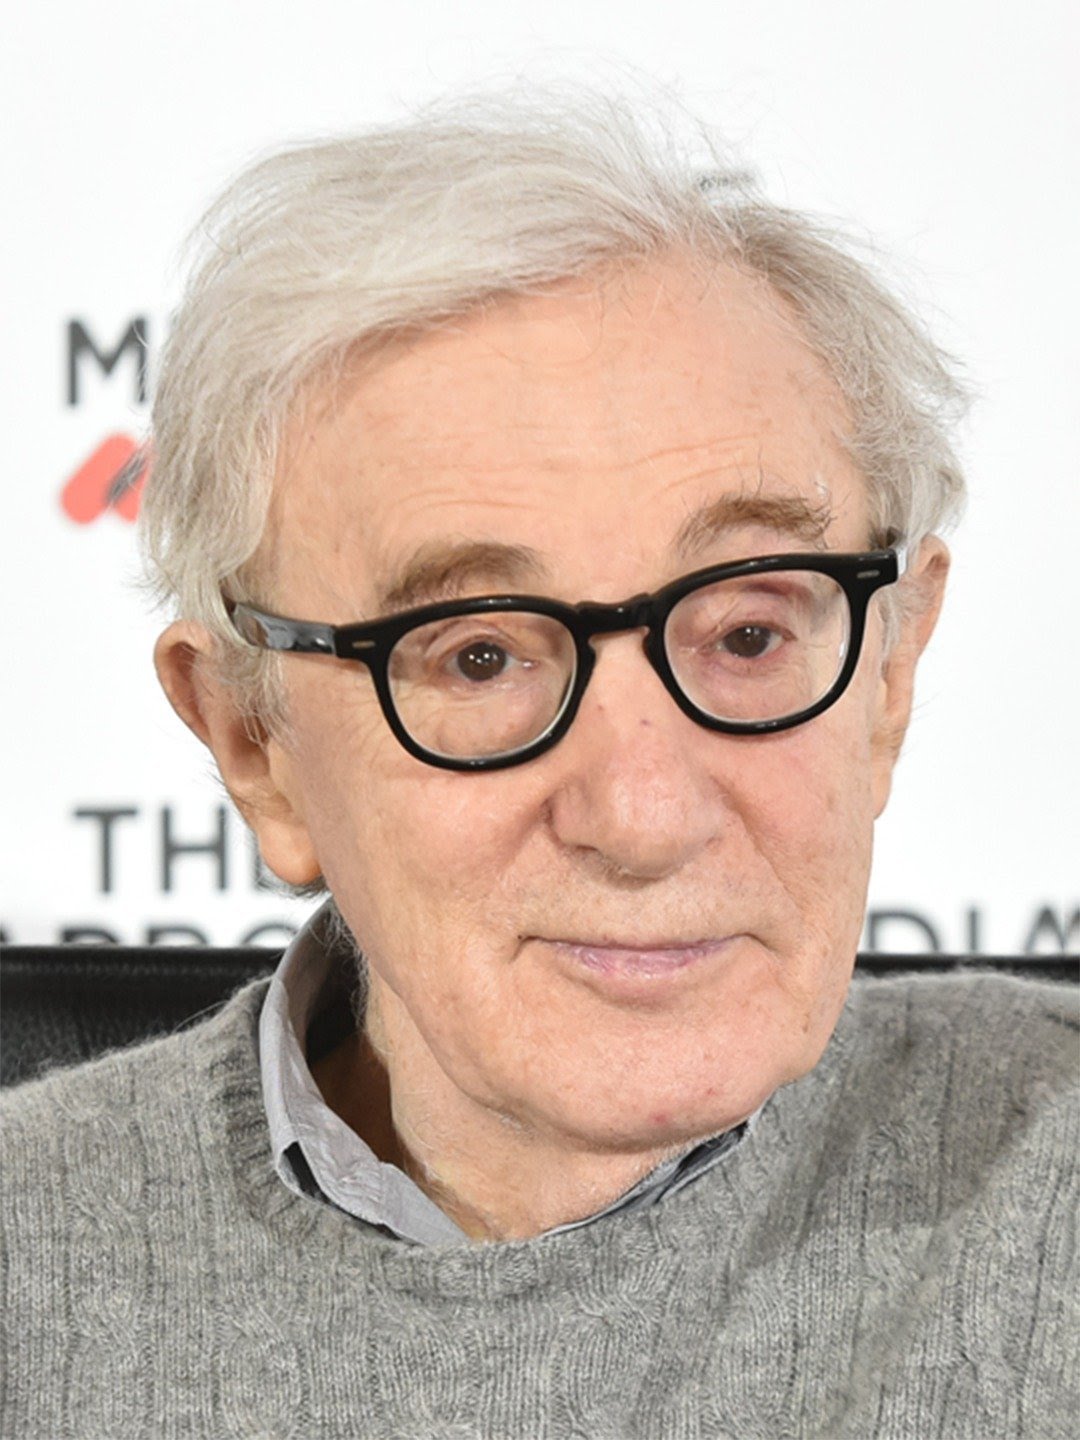 Who is Woody Allen?